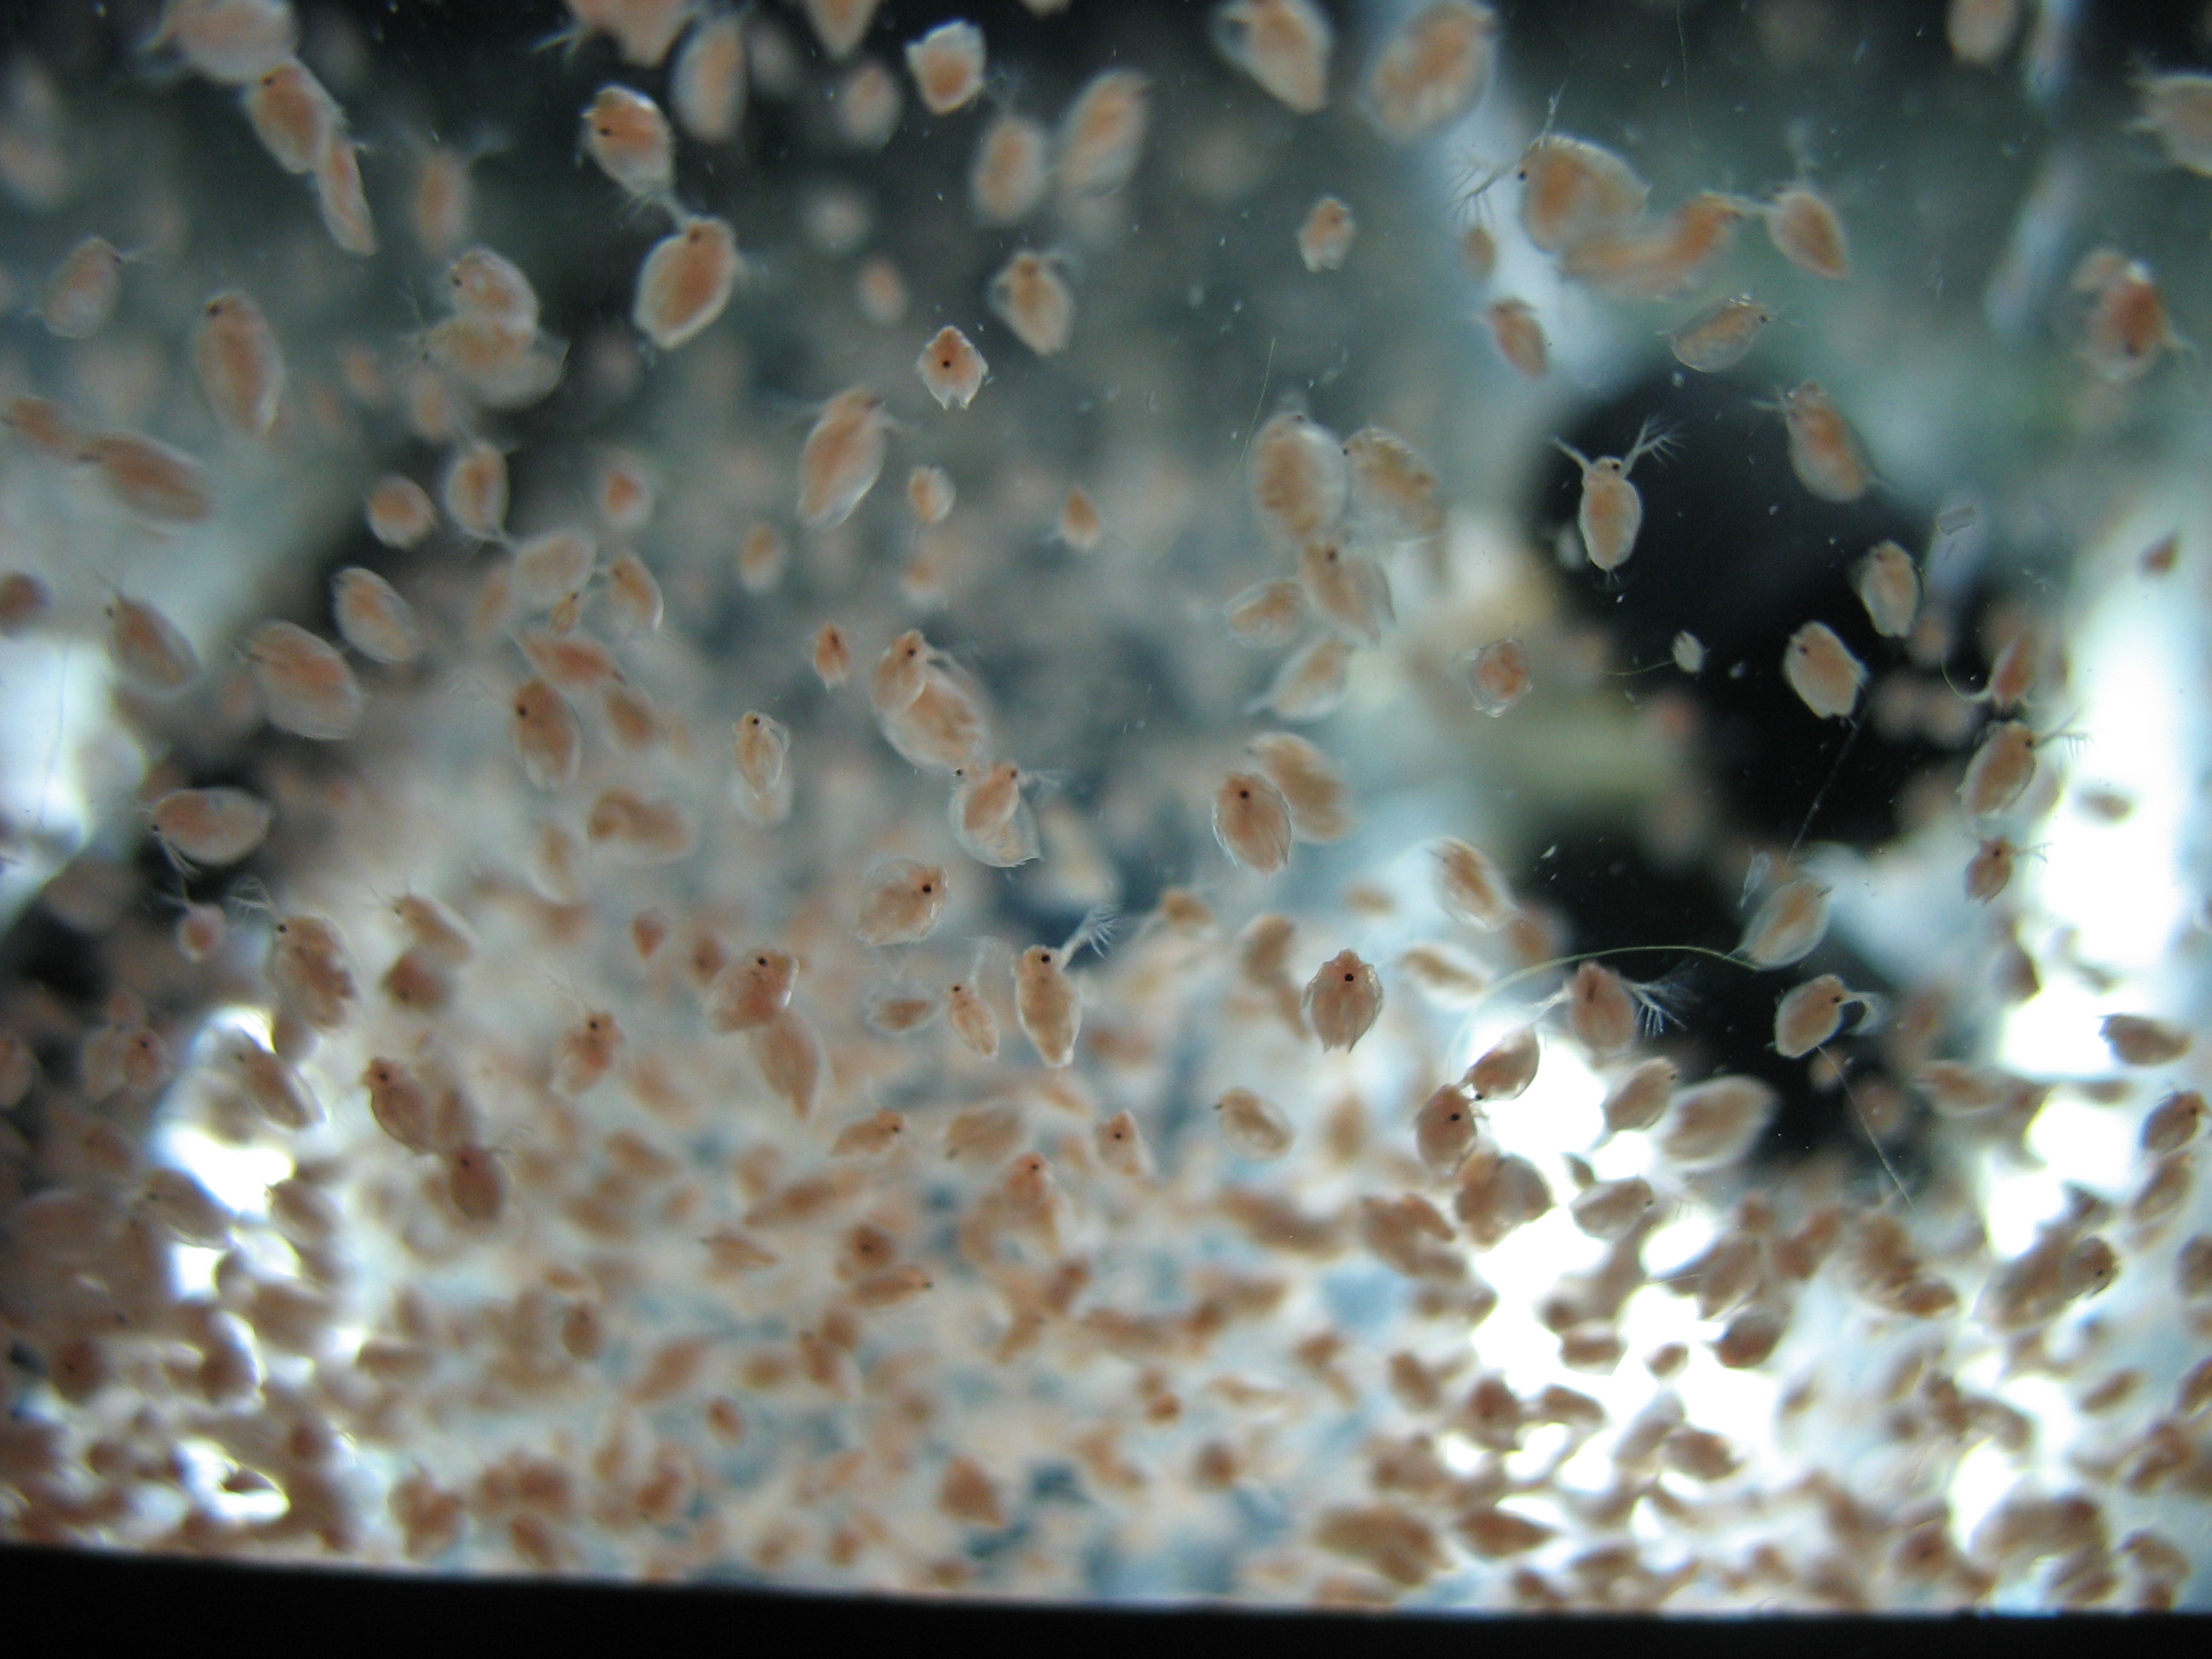 Swarming daphnia creatures @ Shrimp Tank